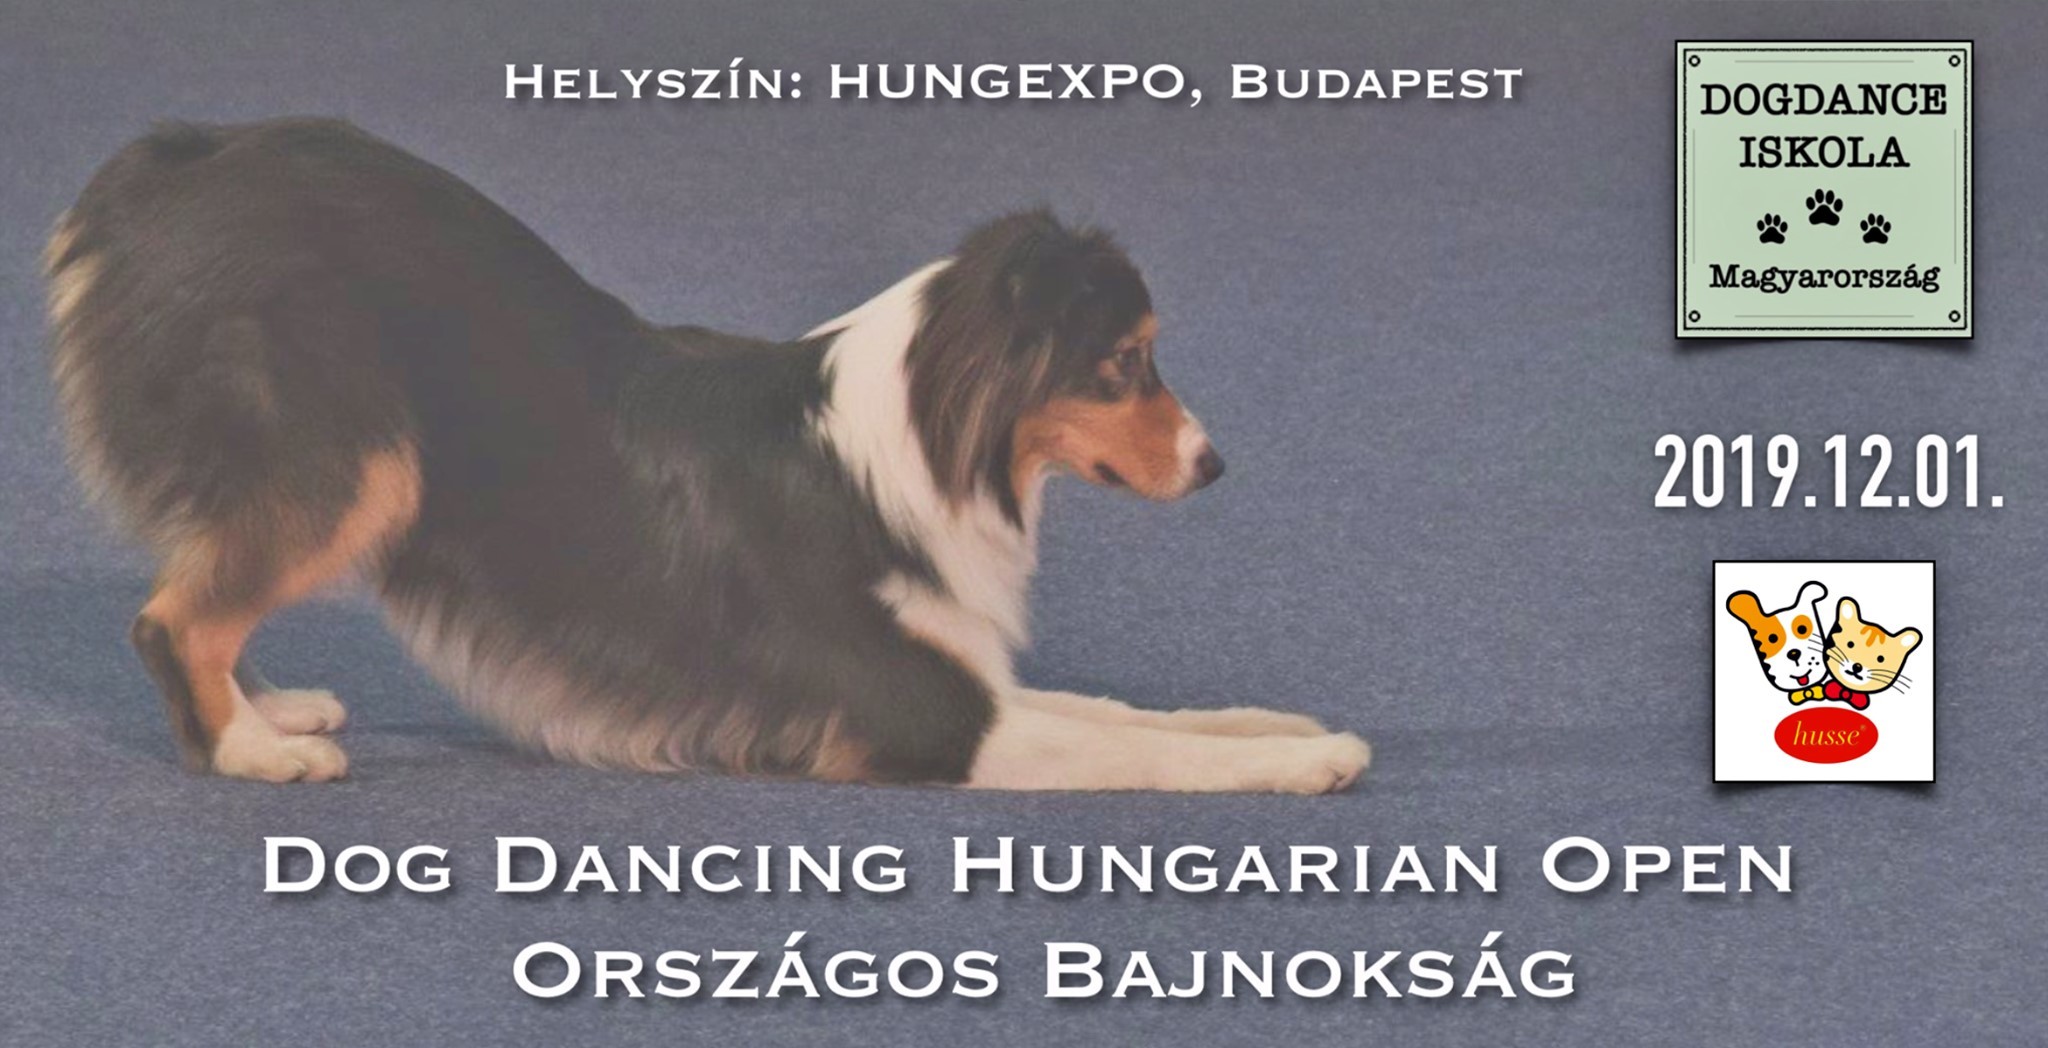 Dog Dancing Hungarian Open és Országos Bajnokság 2019